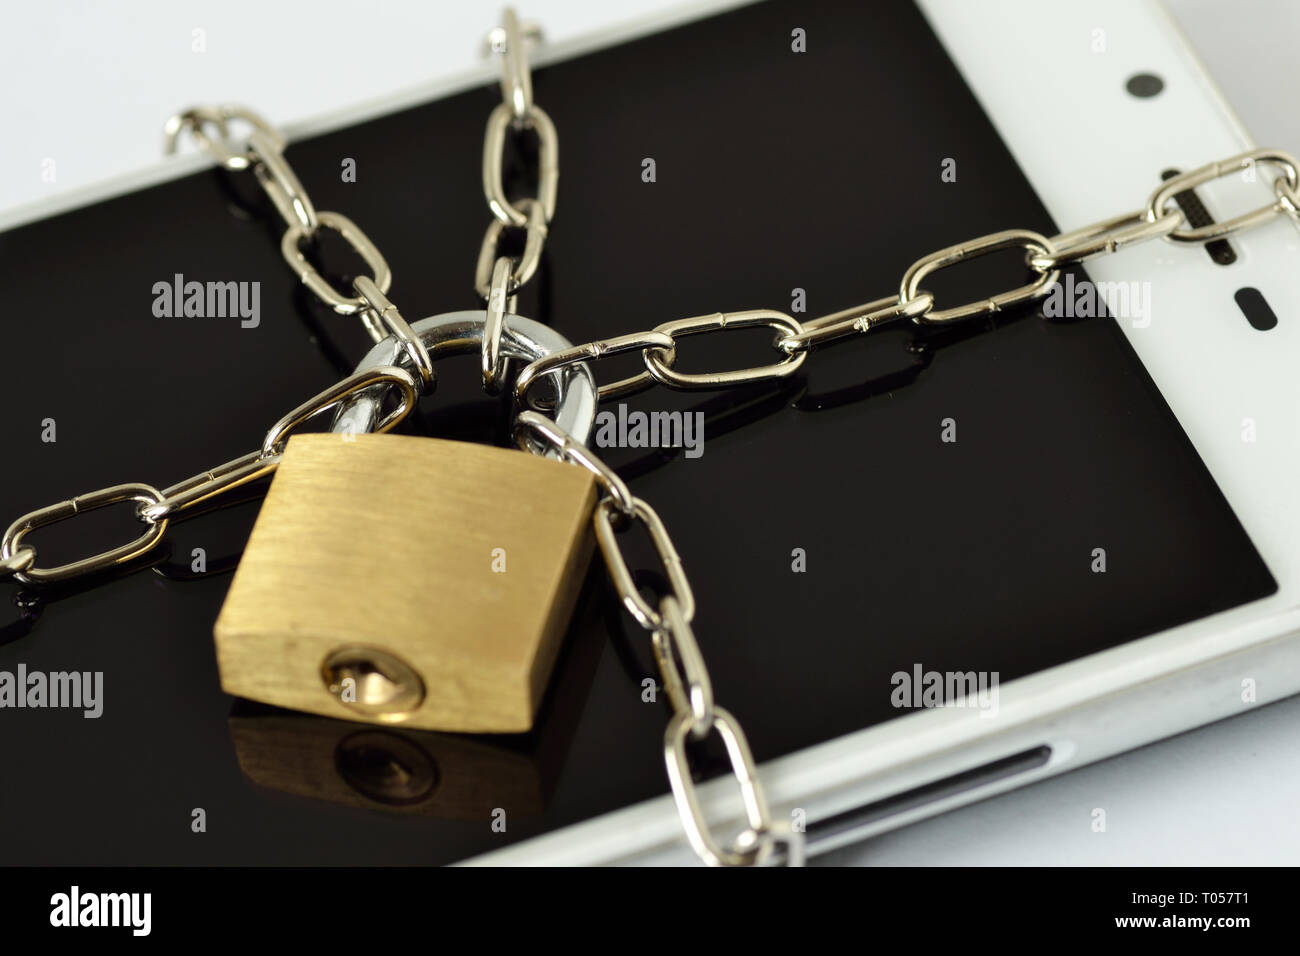 Close-up of verrouillé smartphone avec chaîne et cadenas - Concept de sécurité et de confidentialité des données mobiles Banque D'Images